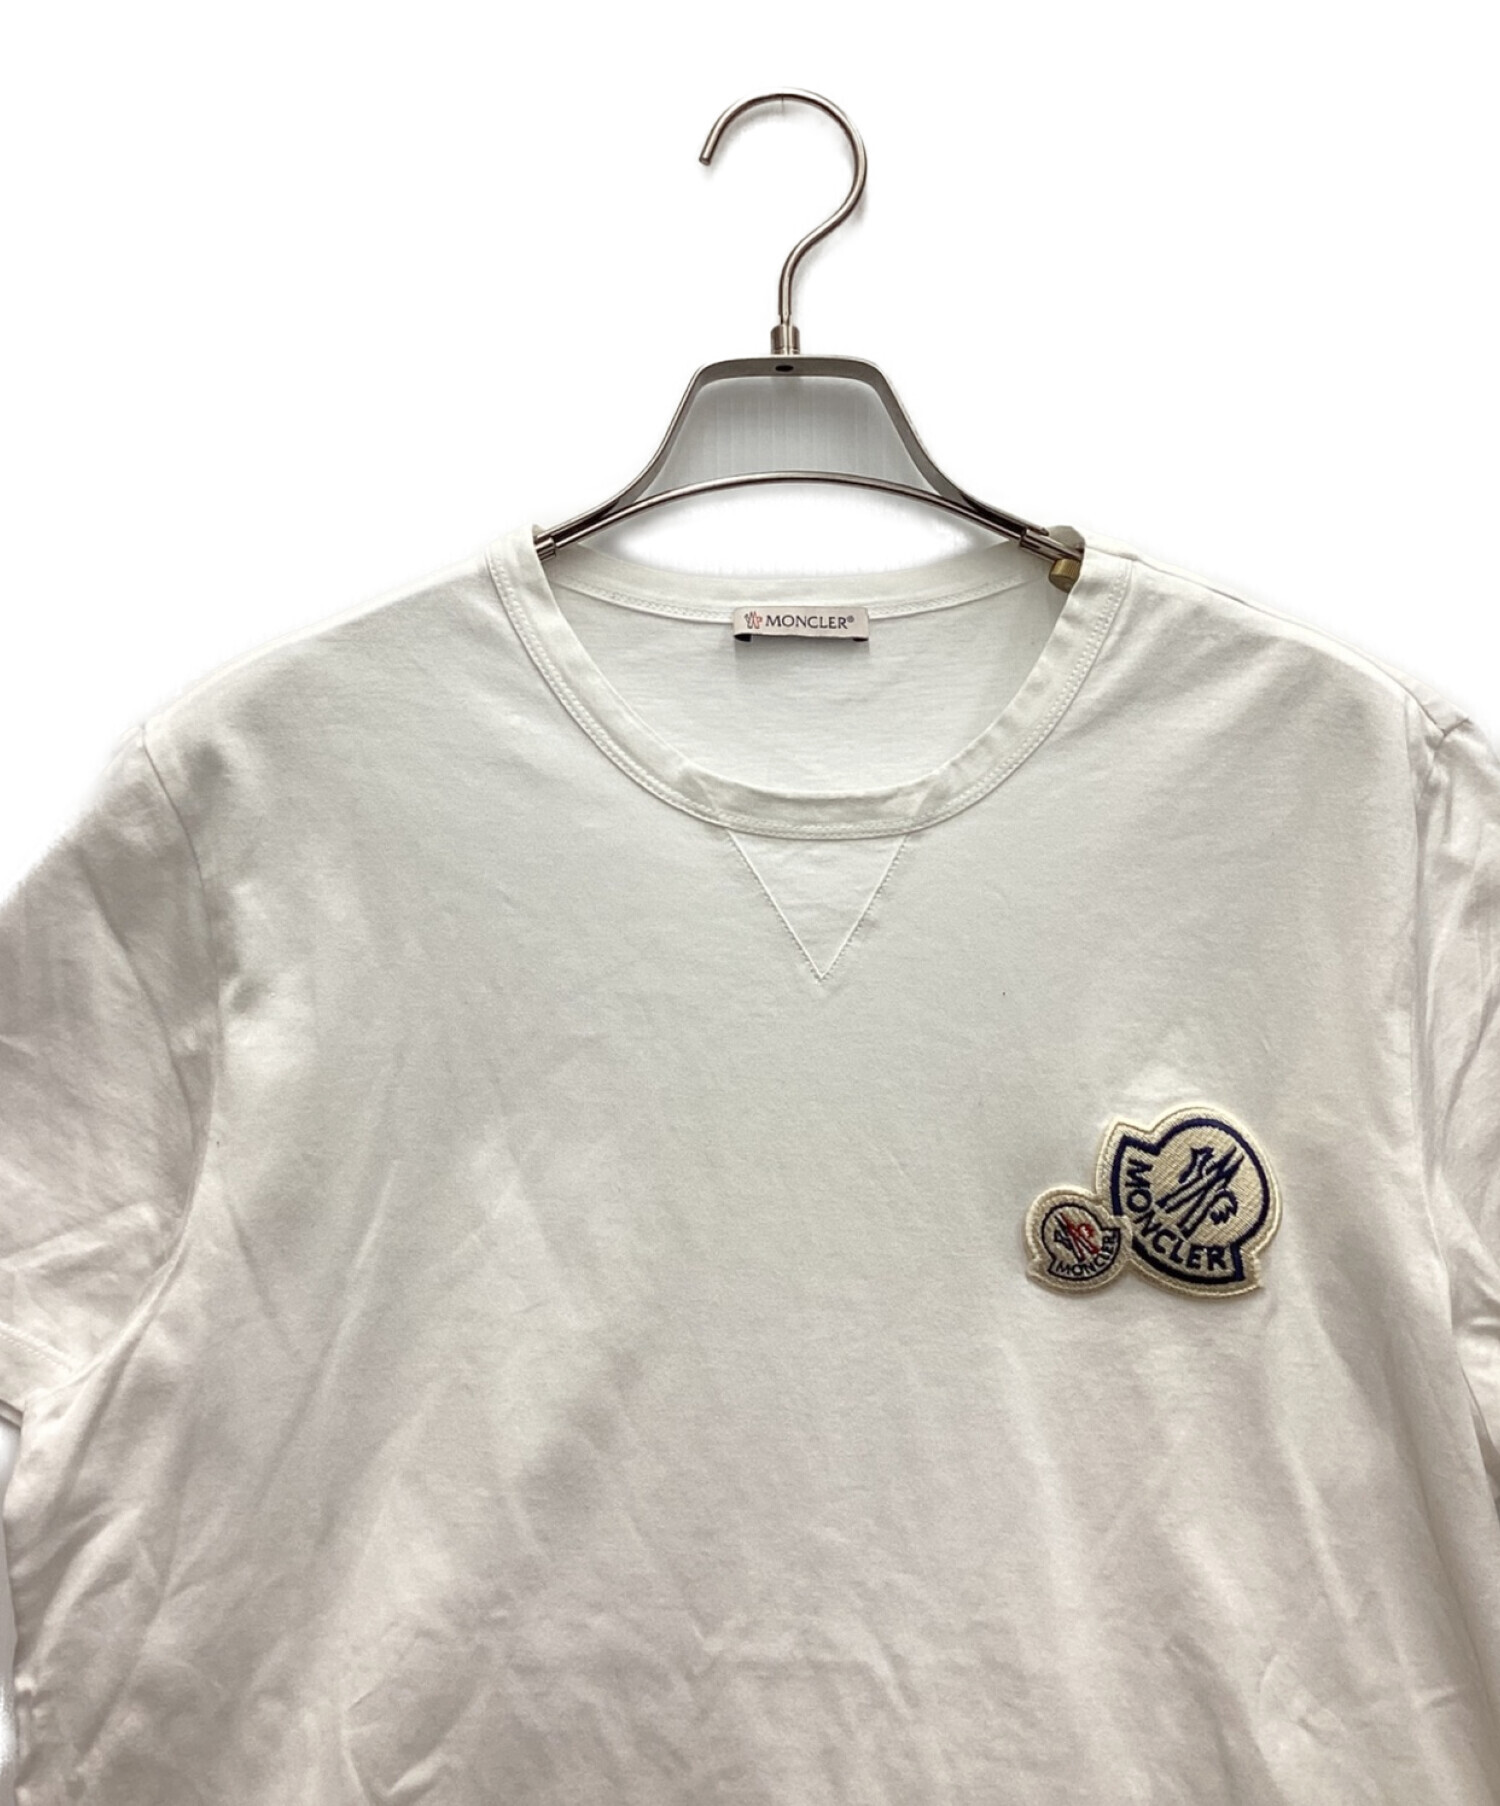 MONCLER (モンクレール) ワッペンロゴTシャツ ホワイト サイズ:M